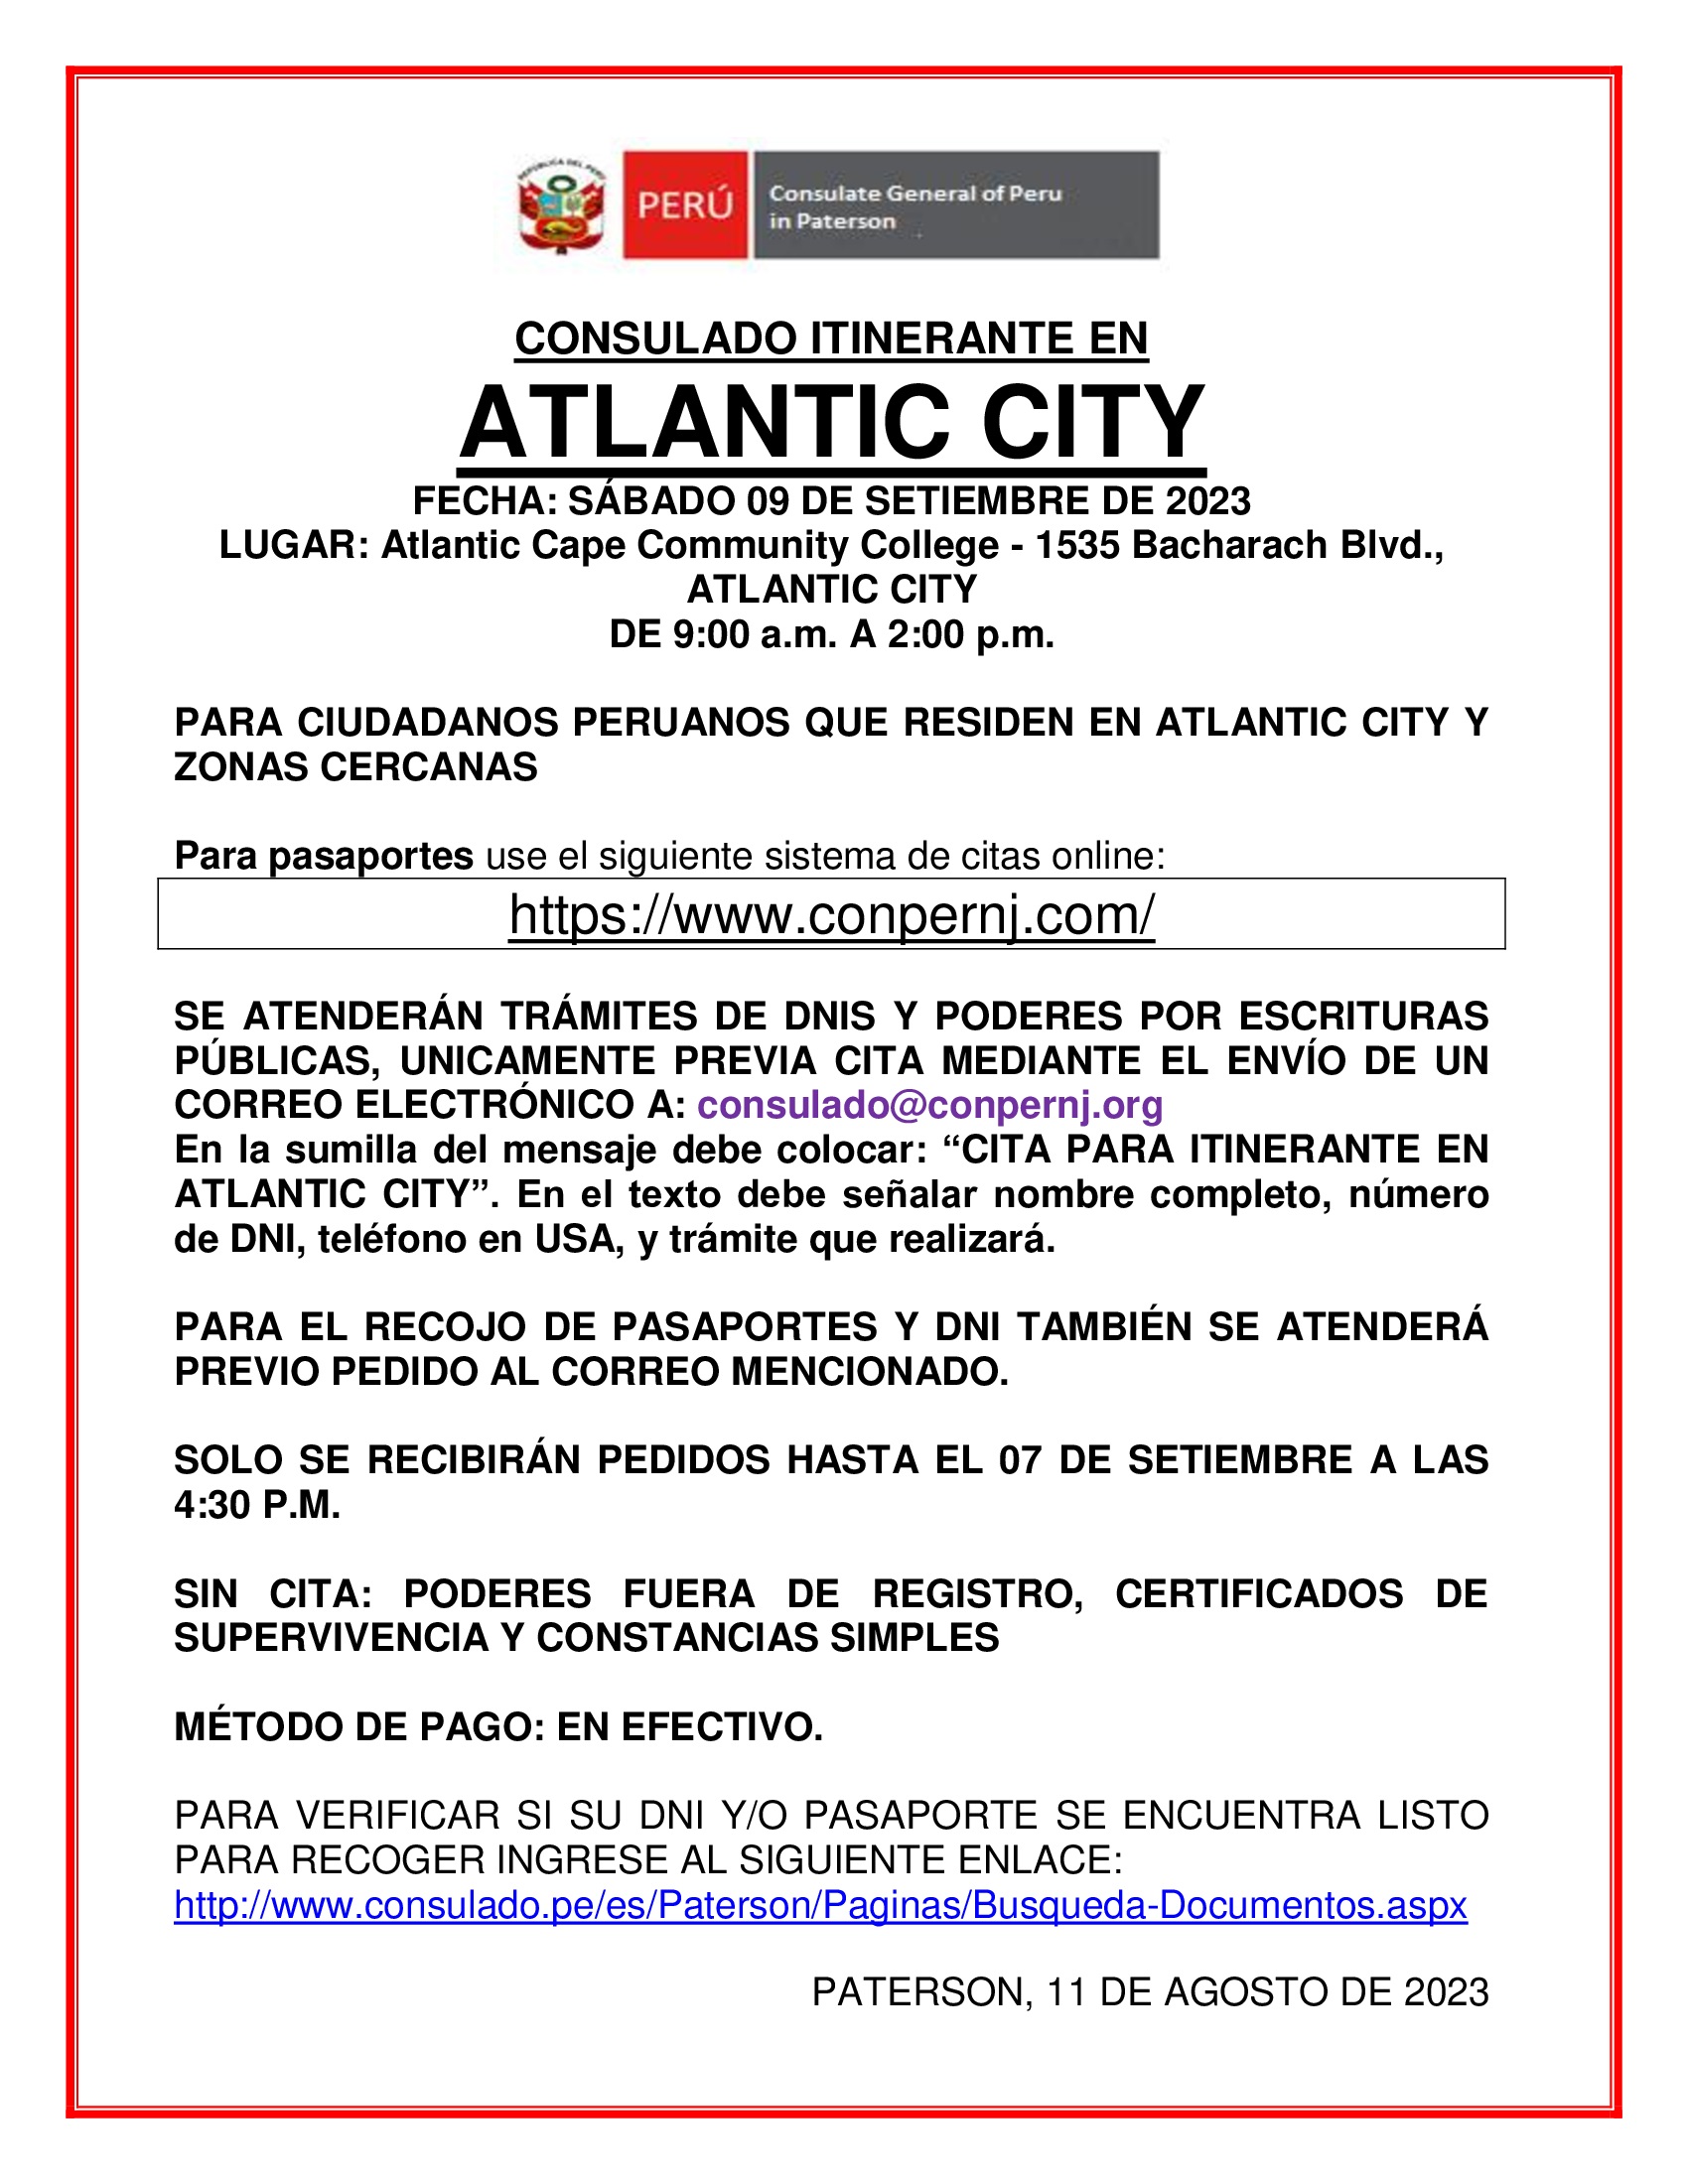 CONSULADO ATLANTIC-CITY SET 2023.jpg